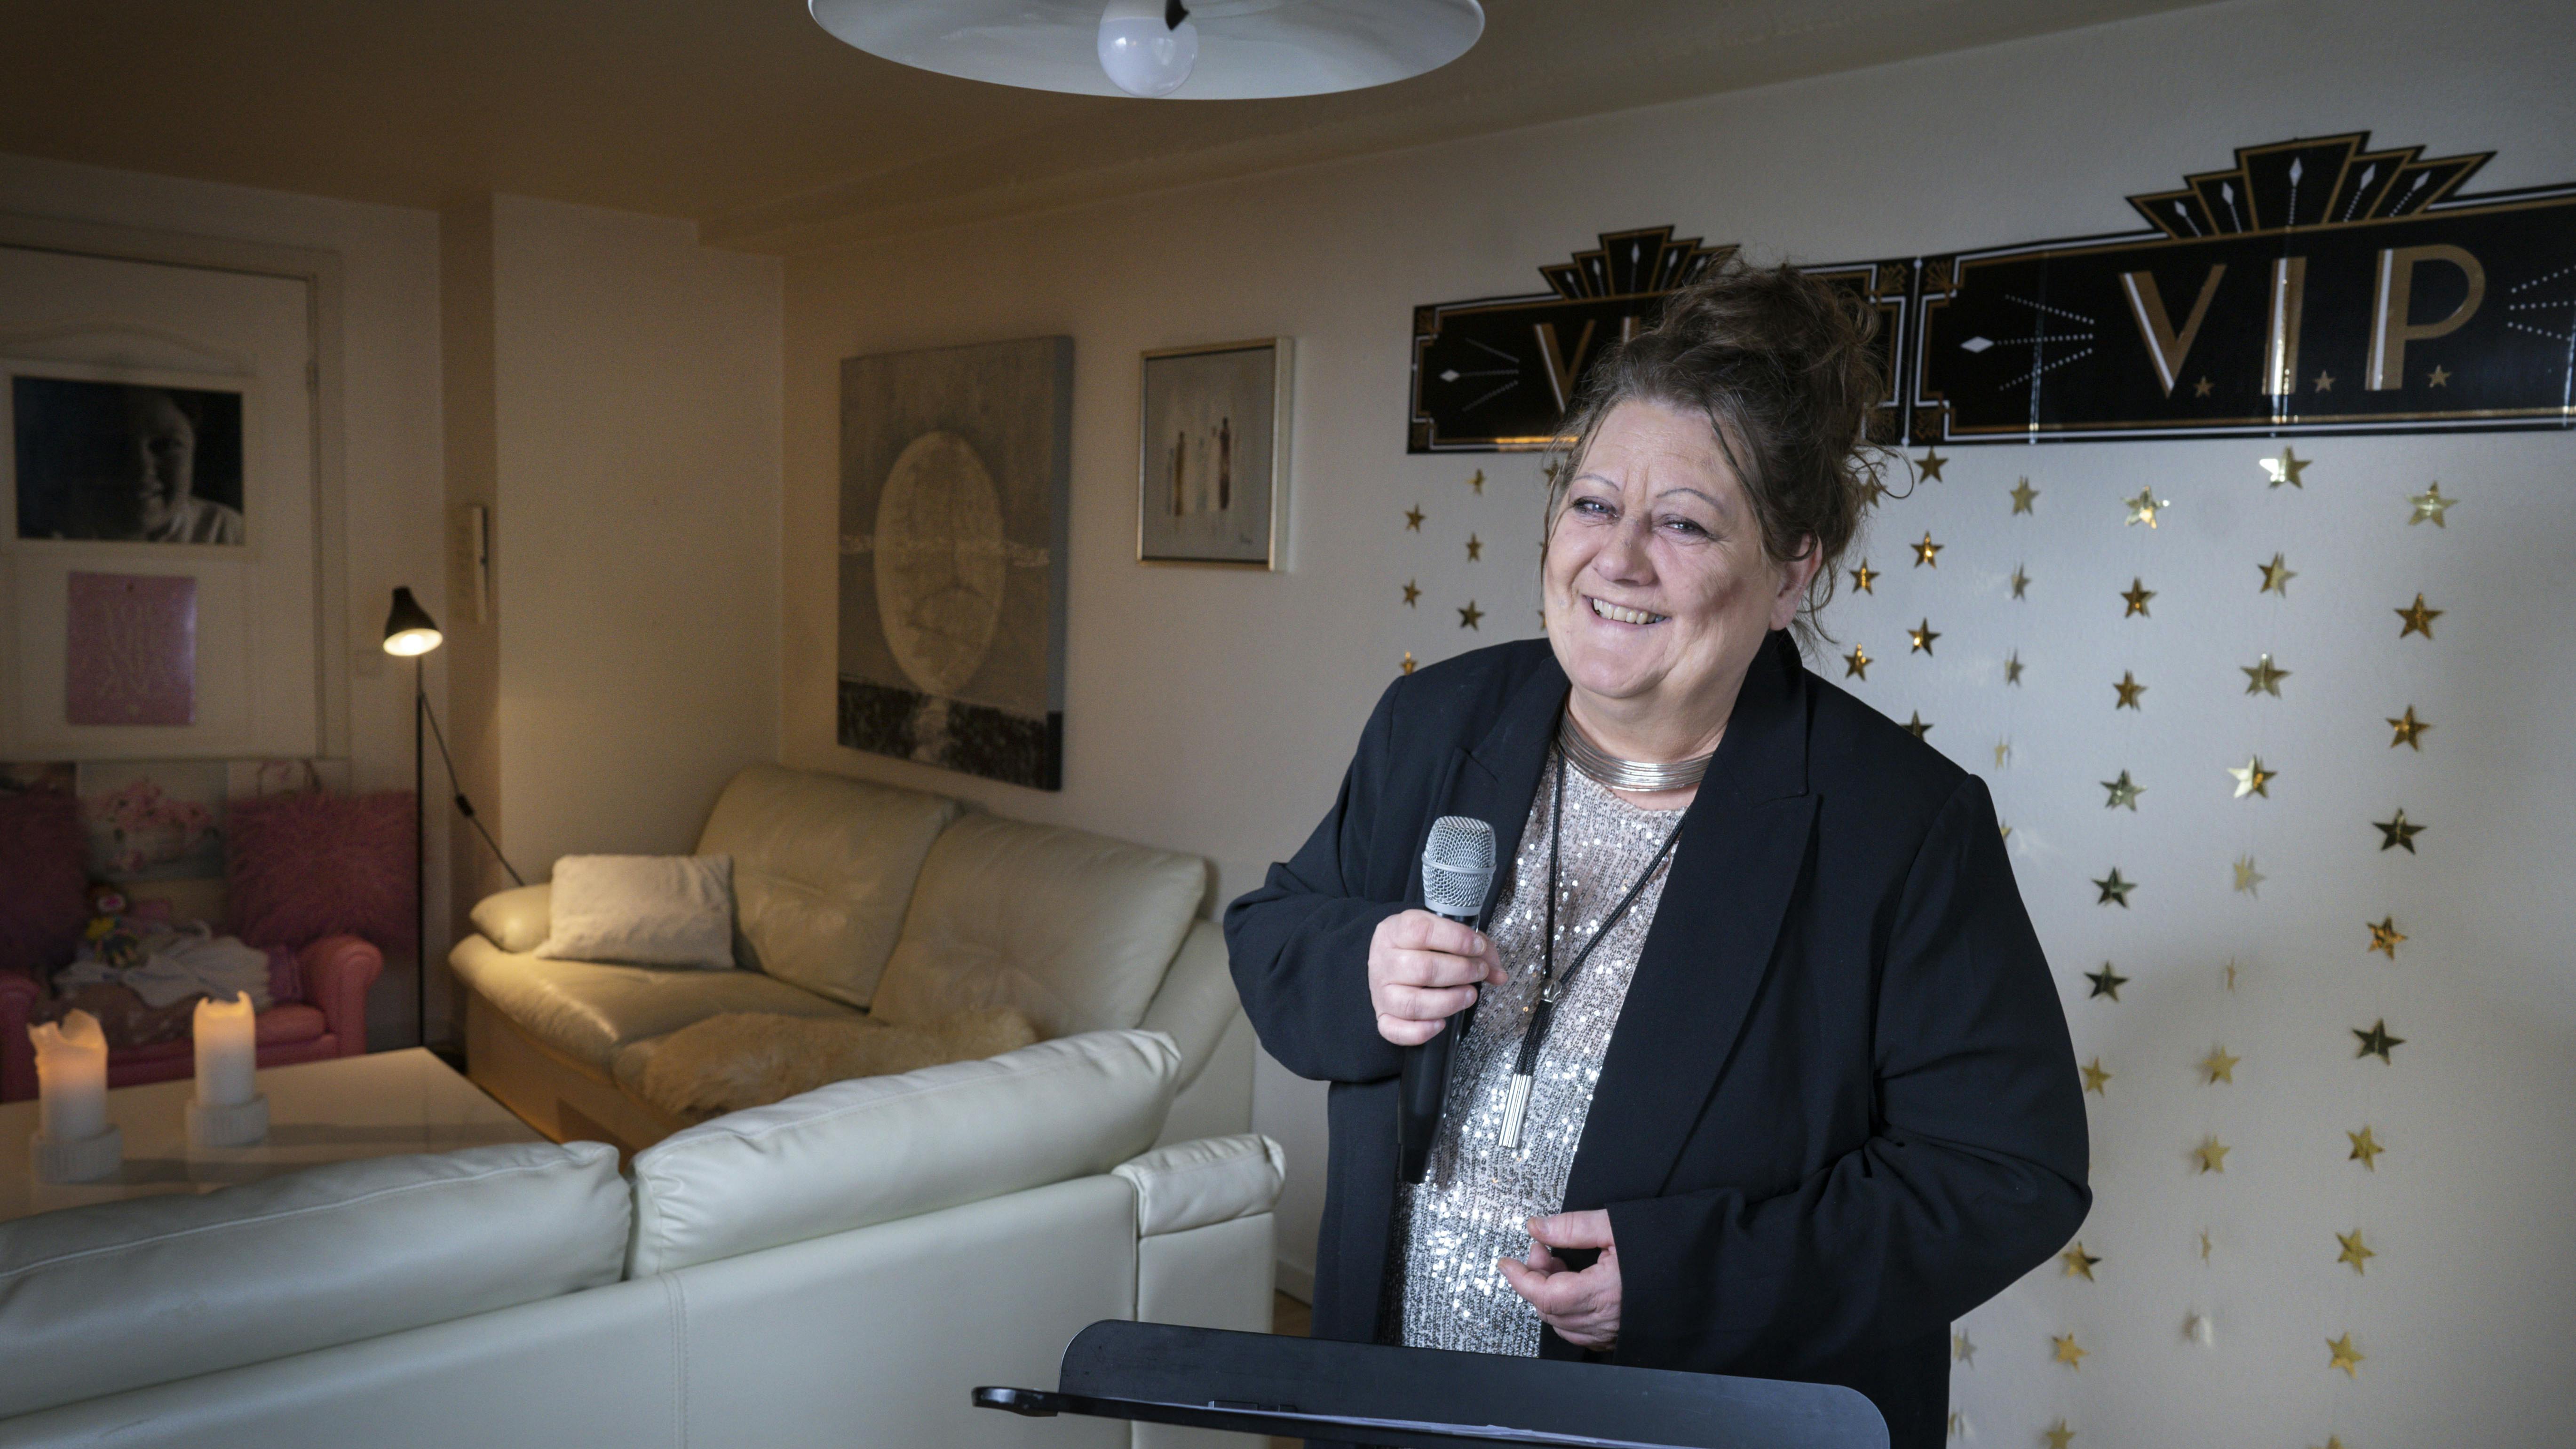 Sangerinden Nynne Qvick laver corona-tv hjemme fra sin stue i form af talkshowet "Grib chancen".